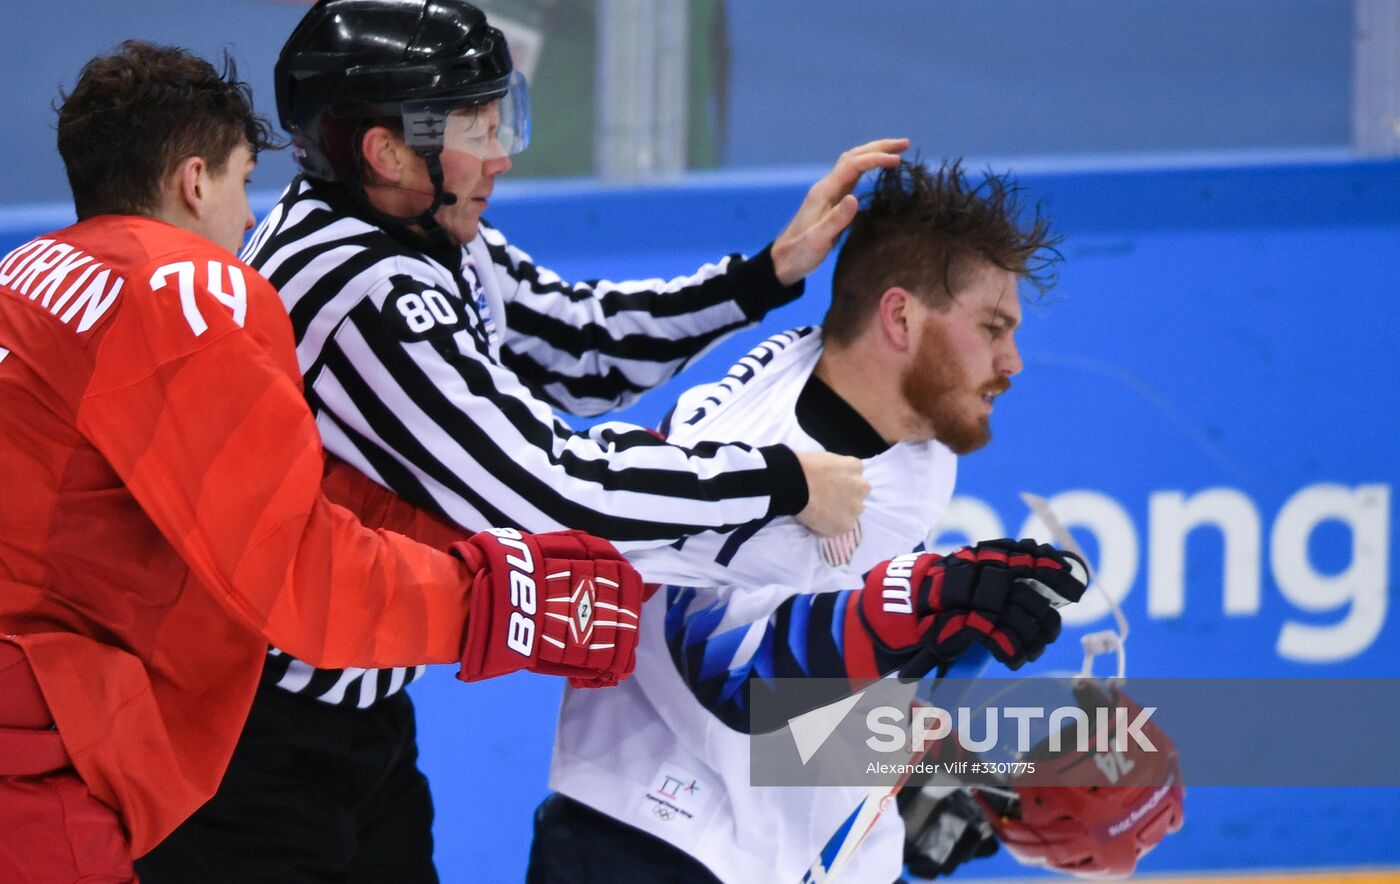 2018 Winter Olympics. Ice Hockey. Men. Russia vs USA